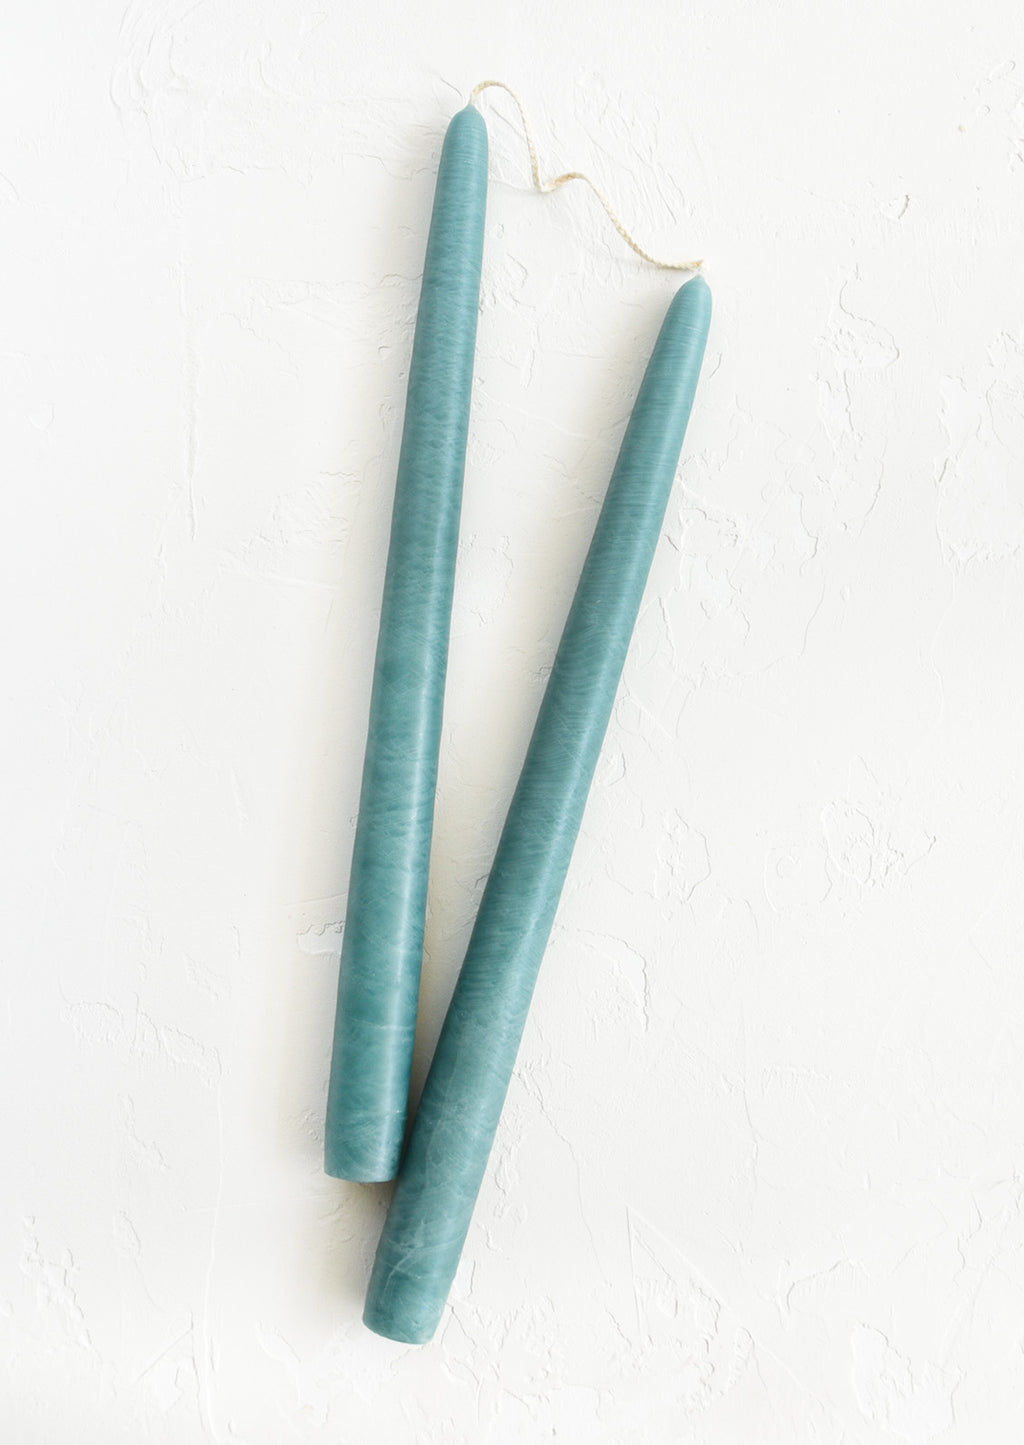 Aquamarine: Pair of taper candles in aquamarine